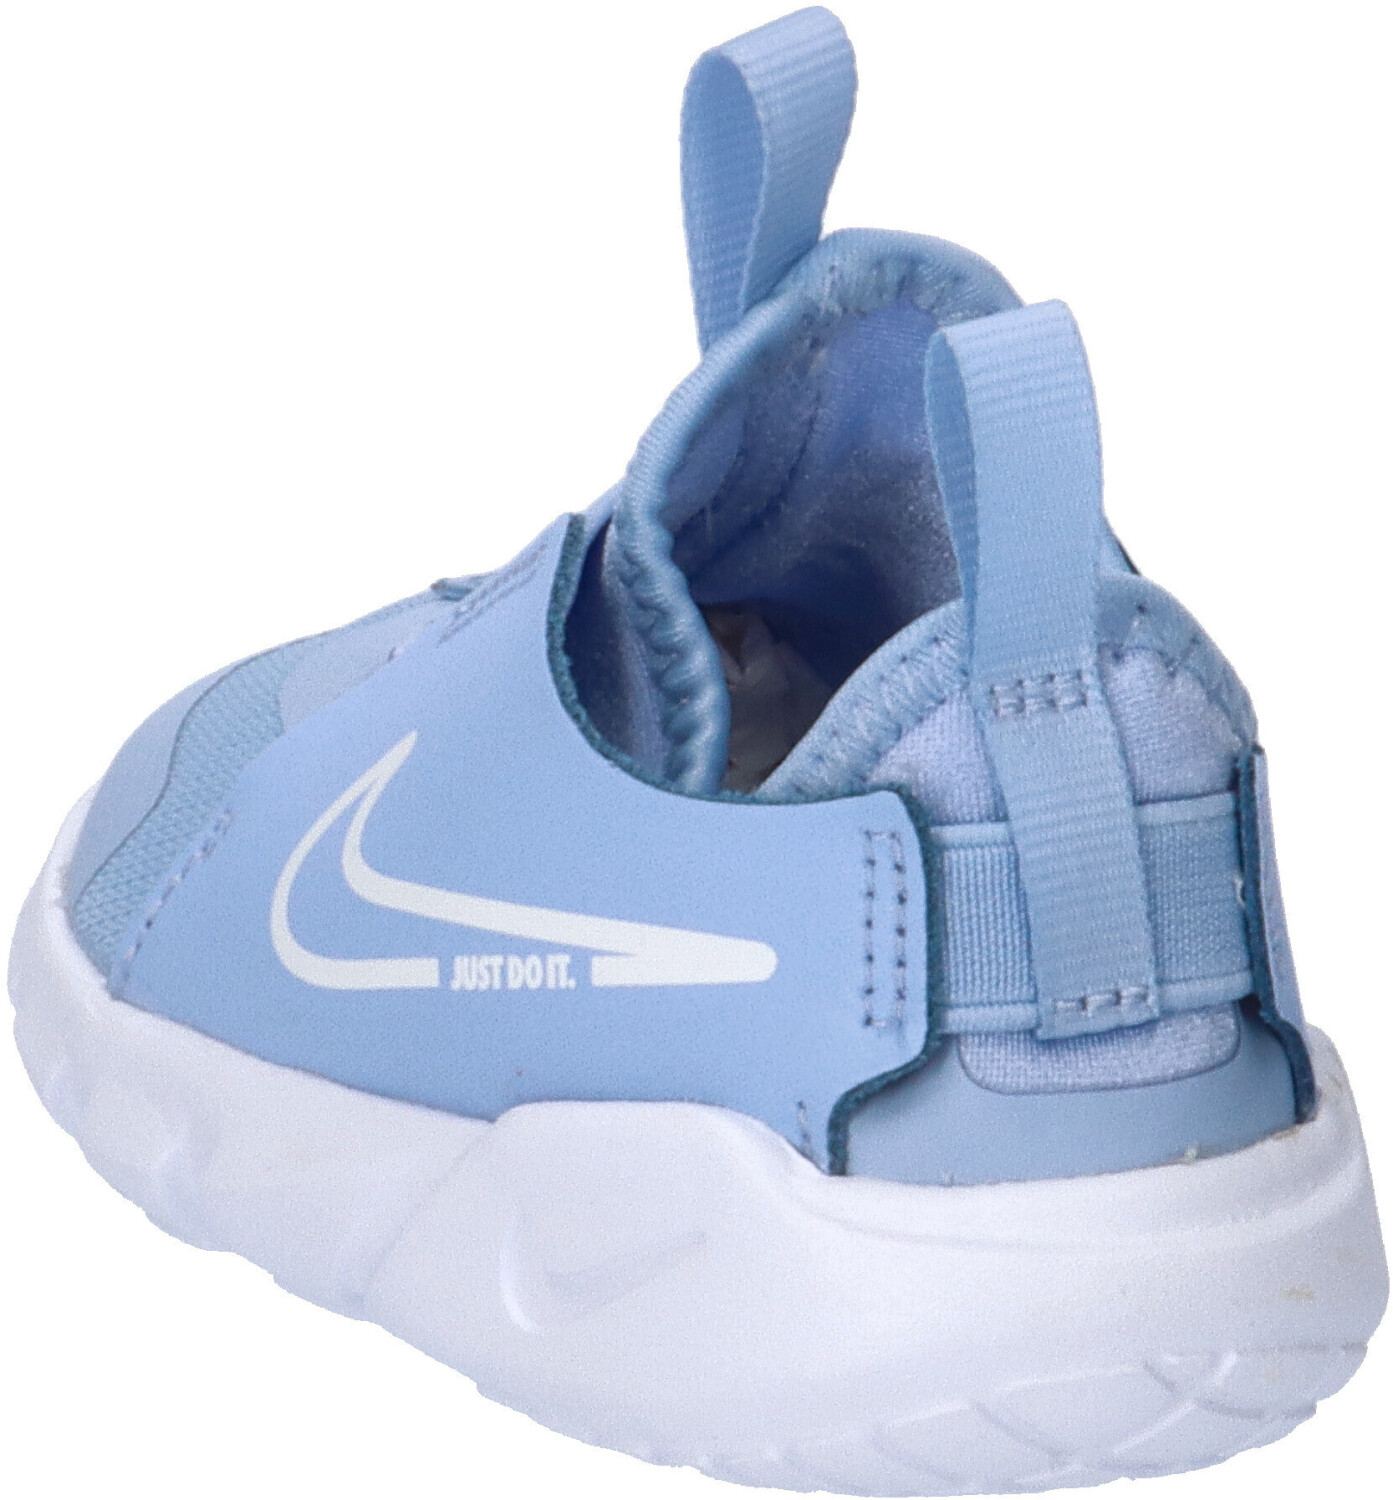 Nike Flex Runner 2 Baby (DJ6039) cobalt bliss/white ab 31,44 € |  Preisvergleich bei